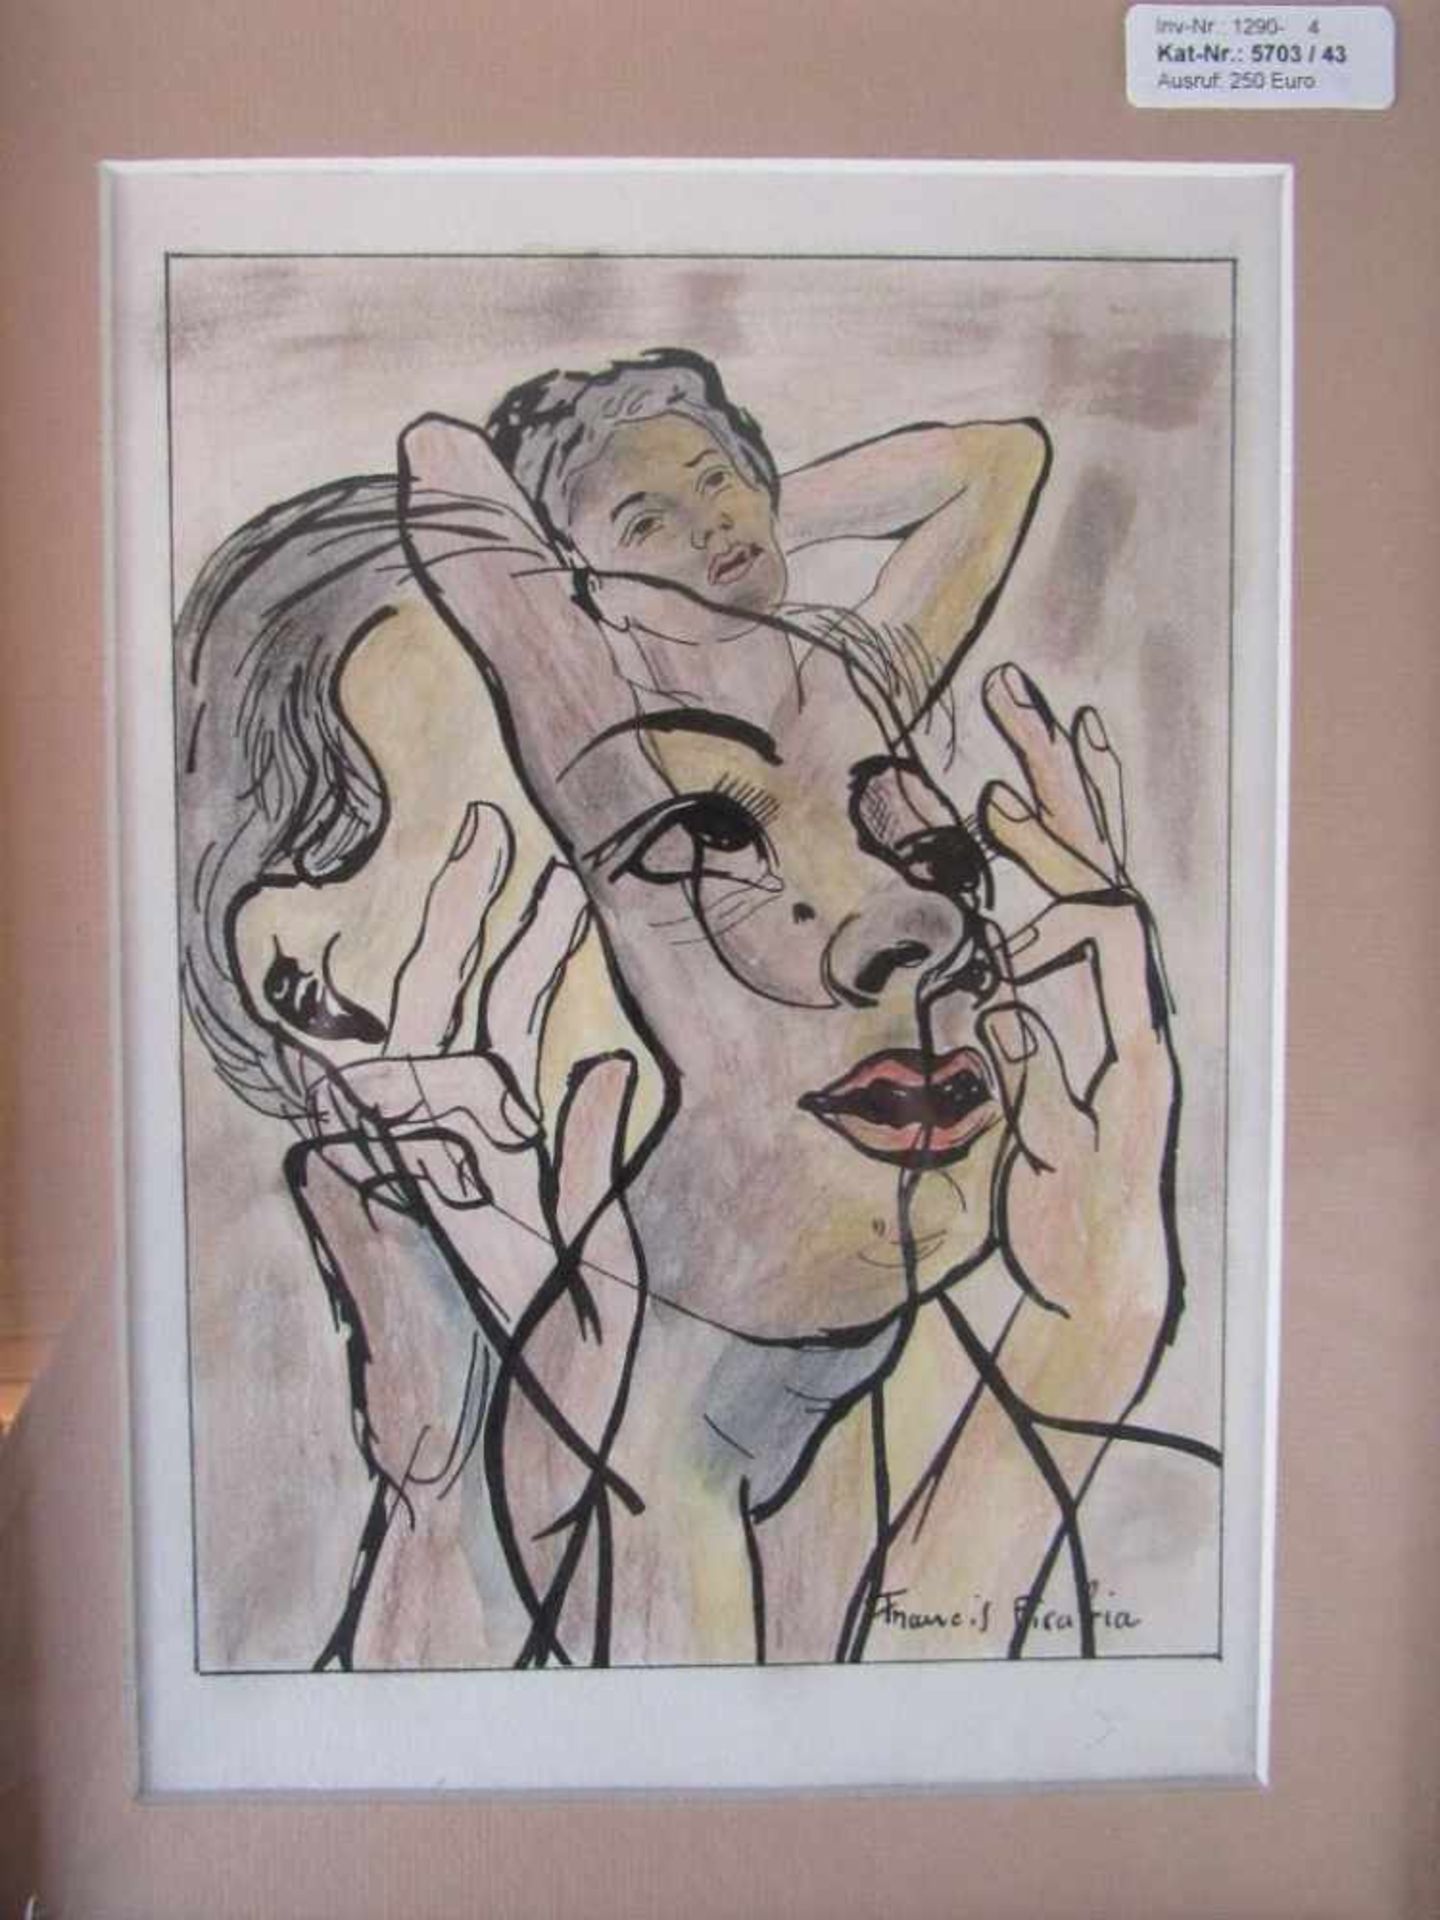 Zeichnung mit Rahmen 56x46cm bezeichnet Francis Picabia- - -20.00 % buyer's premium on the hammer - Bild 2 aus 5